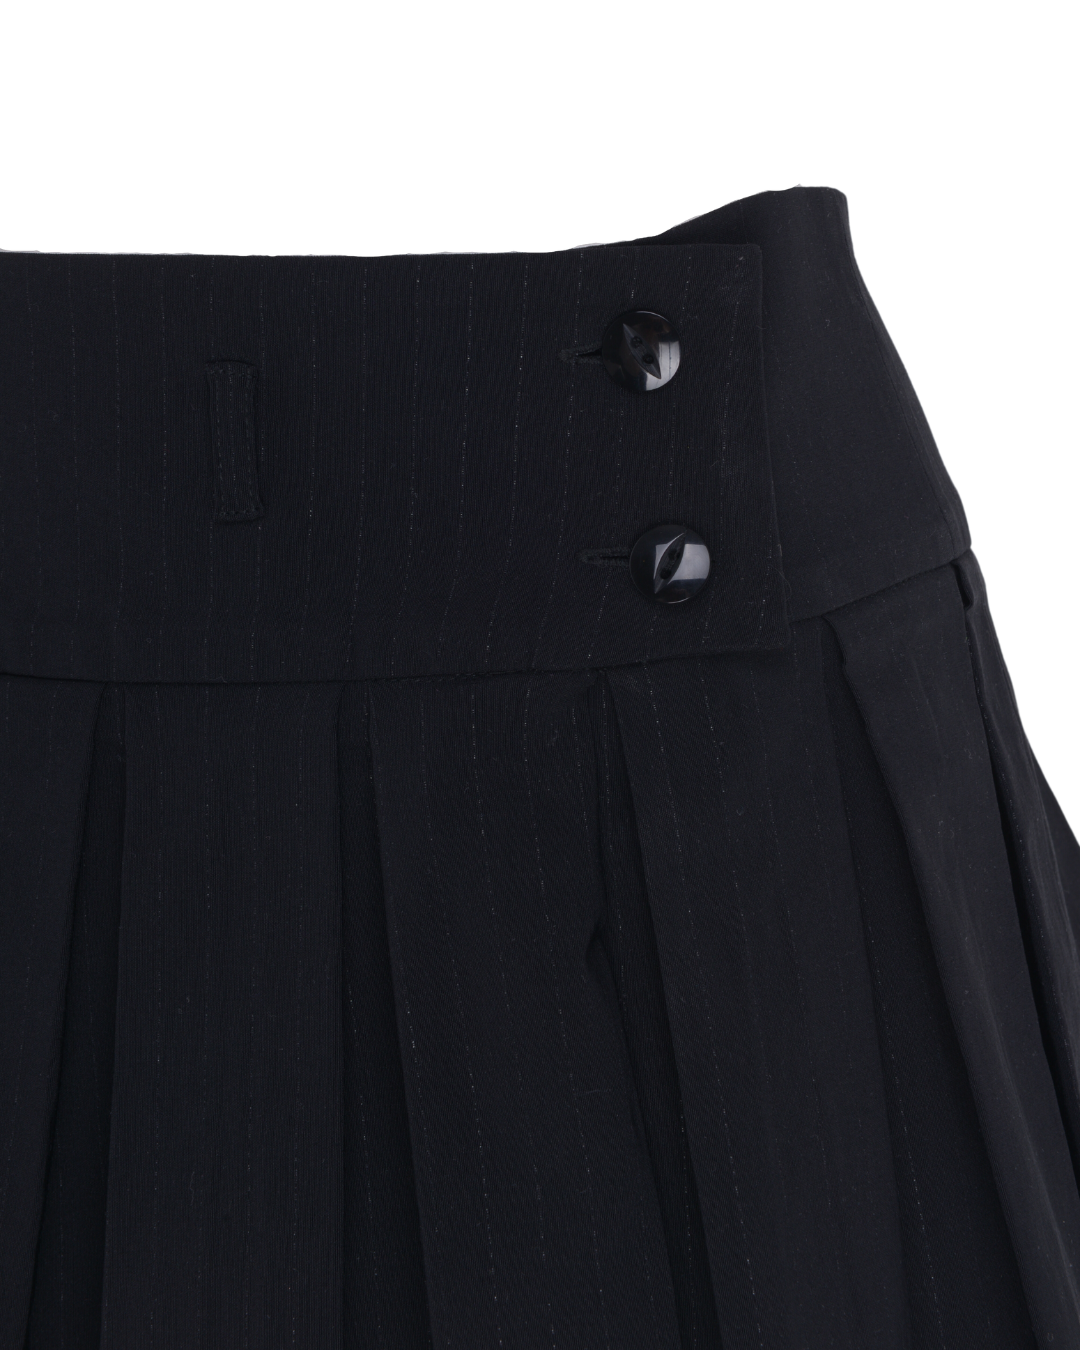 remass x flossie: the ida - skirt